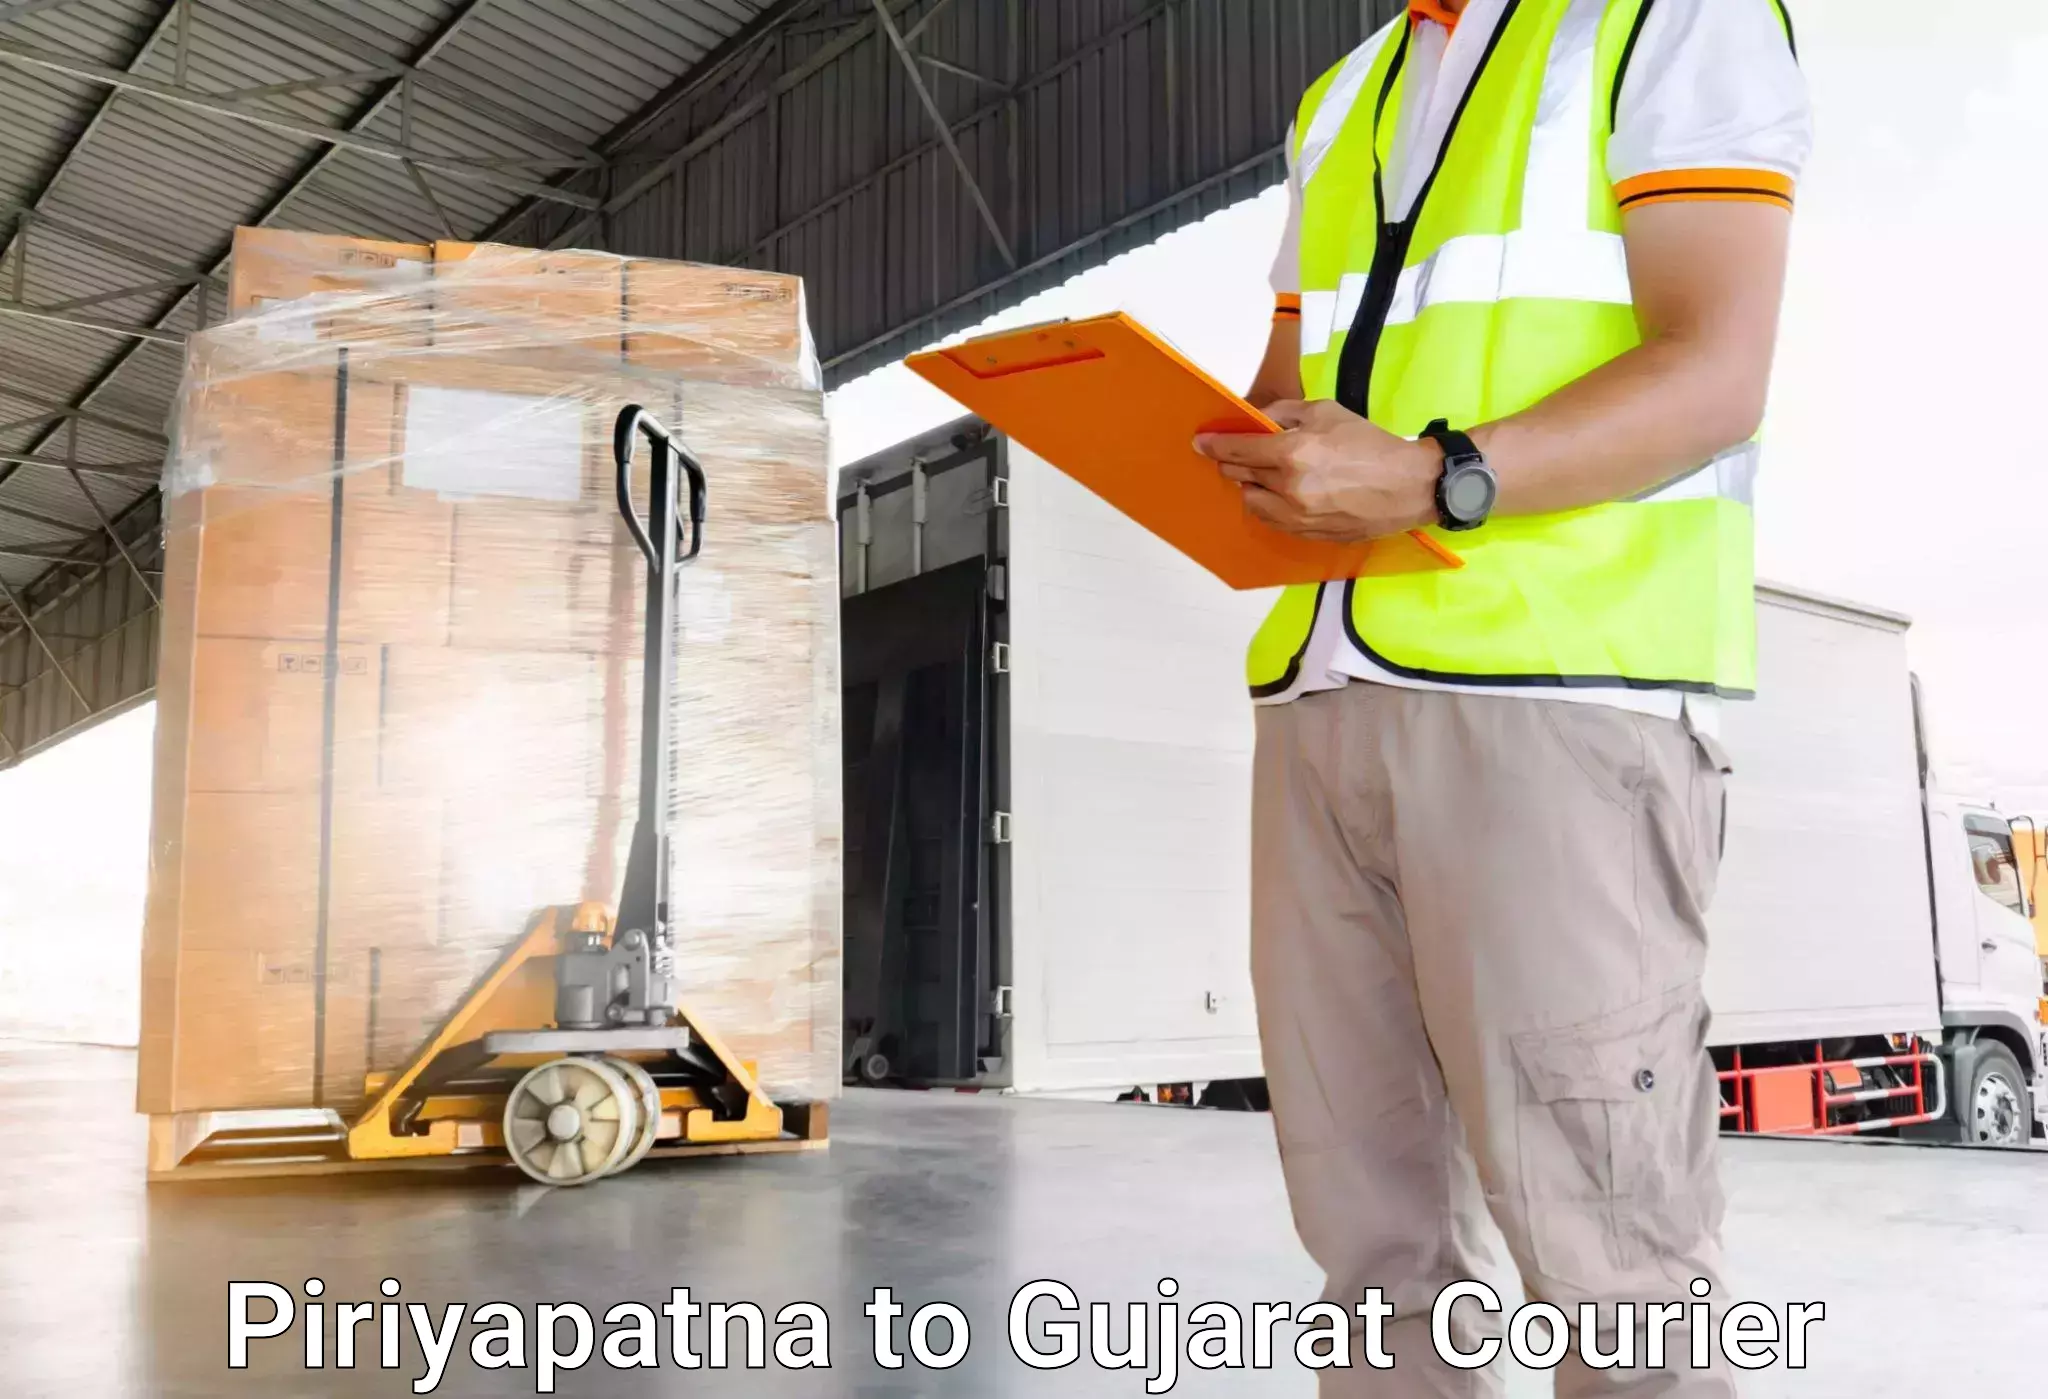 Comprehensive baggage service Piriyapatna to Savar Kundla